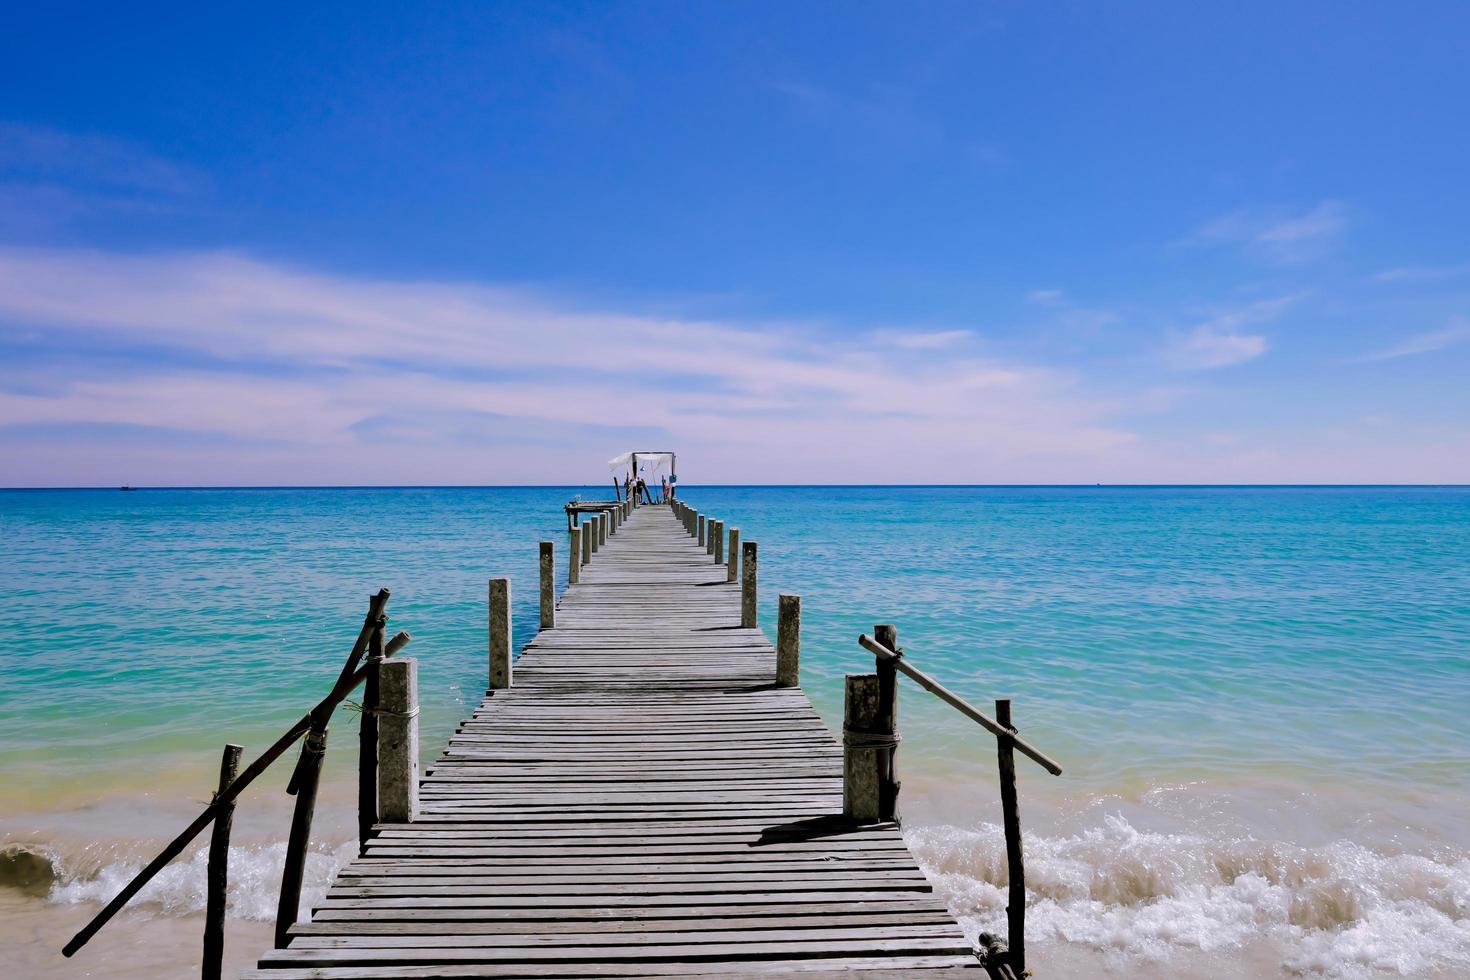 un molo di legno che si protende verso il mare, vista sul mare con cielo nuvoloso e blu per viaggiare in vacanza relax come l'estate foto